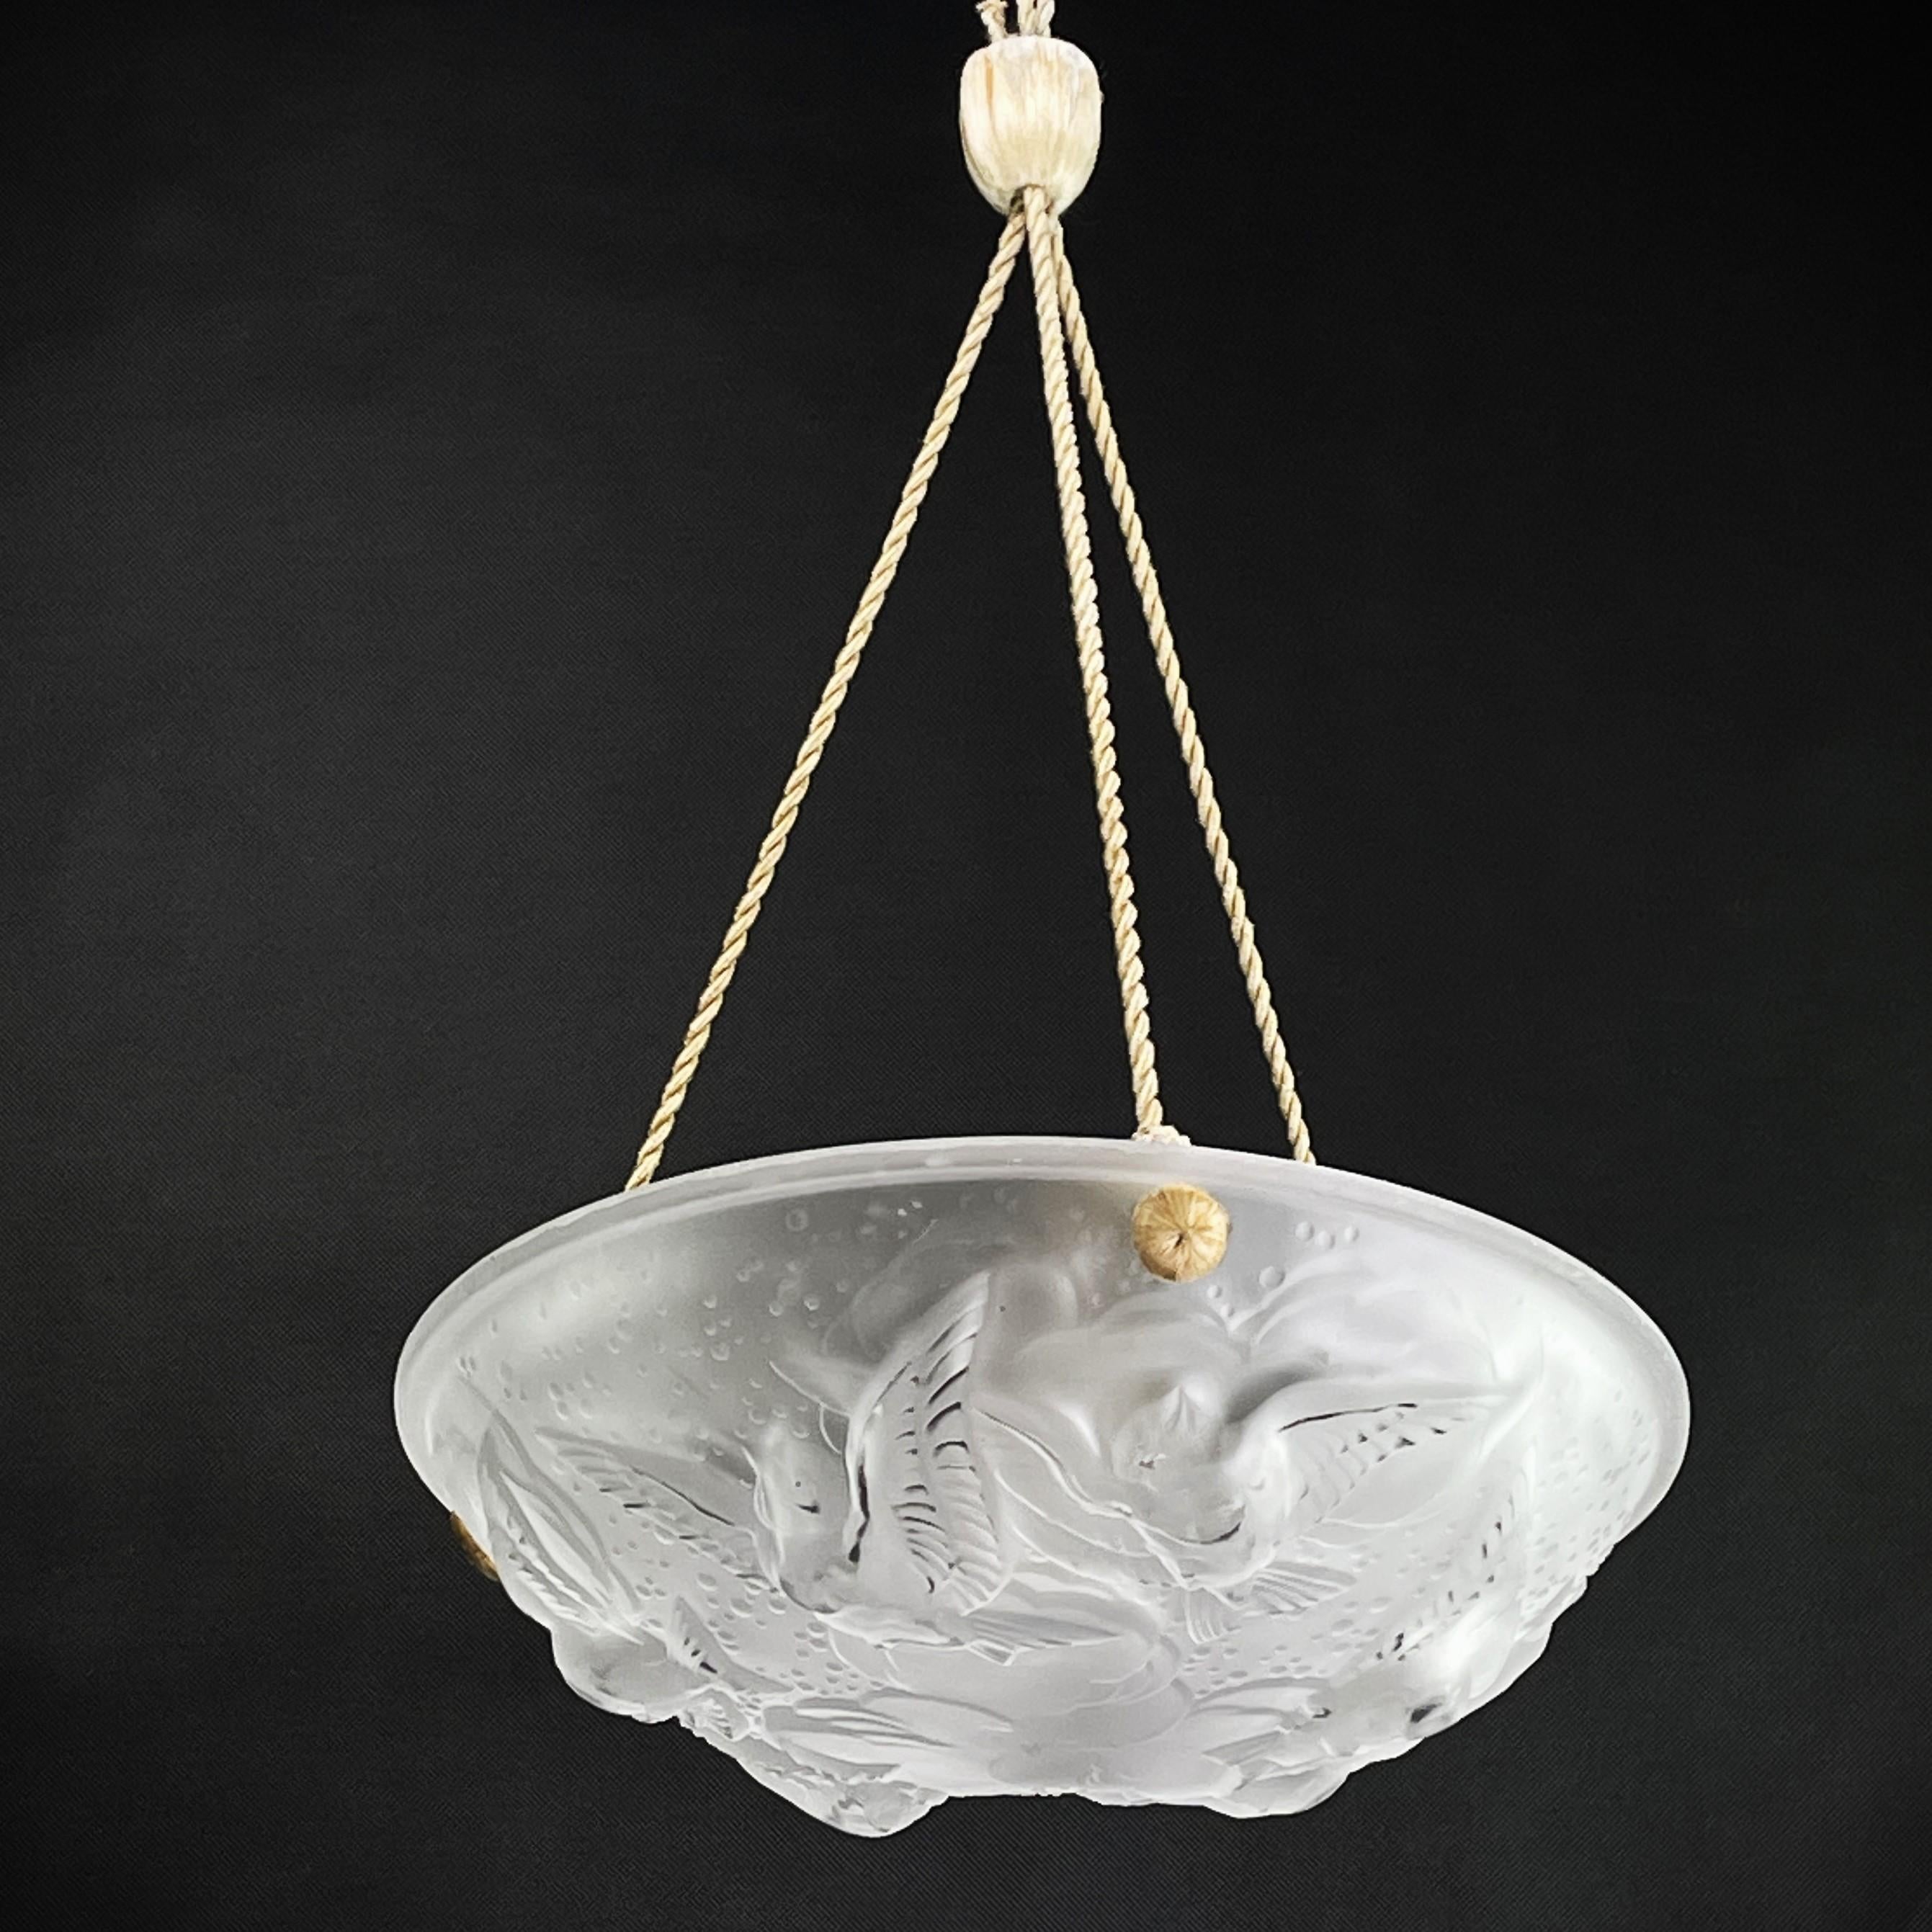 1 Art-Deco-Lampe  

Die ART DECO-Deckenleuchte ist ein bemerkenswertes Beispiel für die Handwerkskunst und den Stil des frühen 20. Jahrhunderts. 

Die signierte Deckenleuchte ist ein Zeichen für die hervorragende Handwerkskunst und Qualität, für die